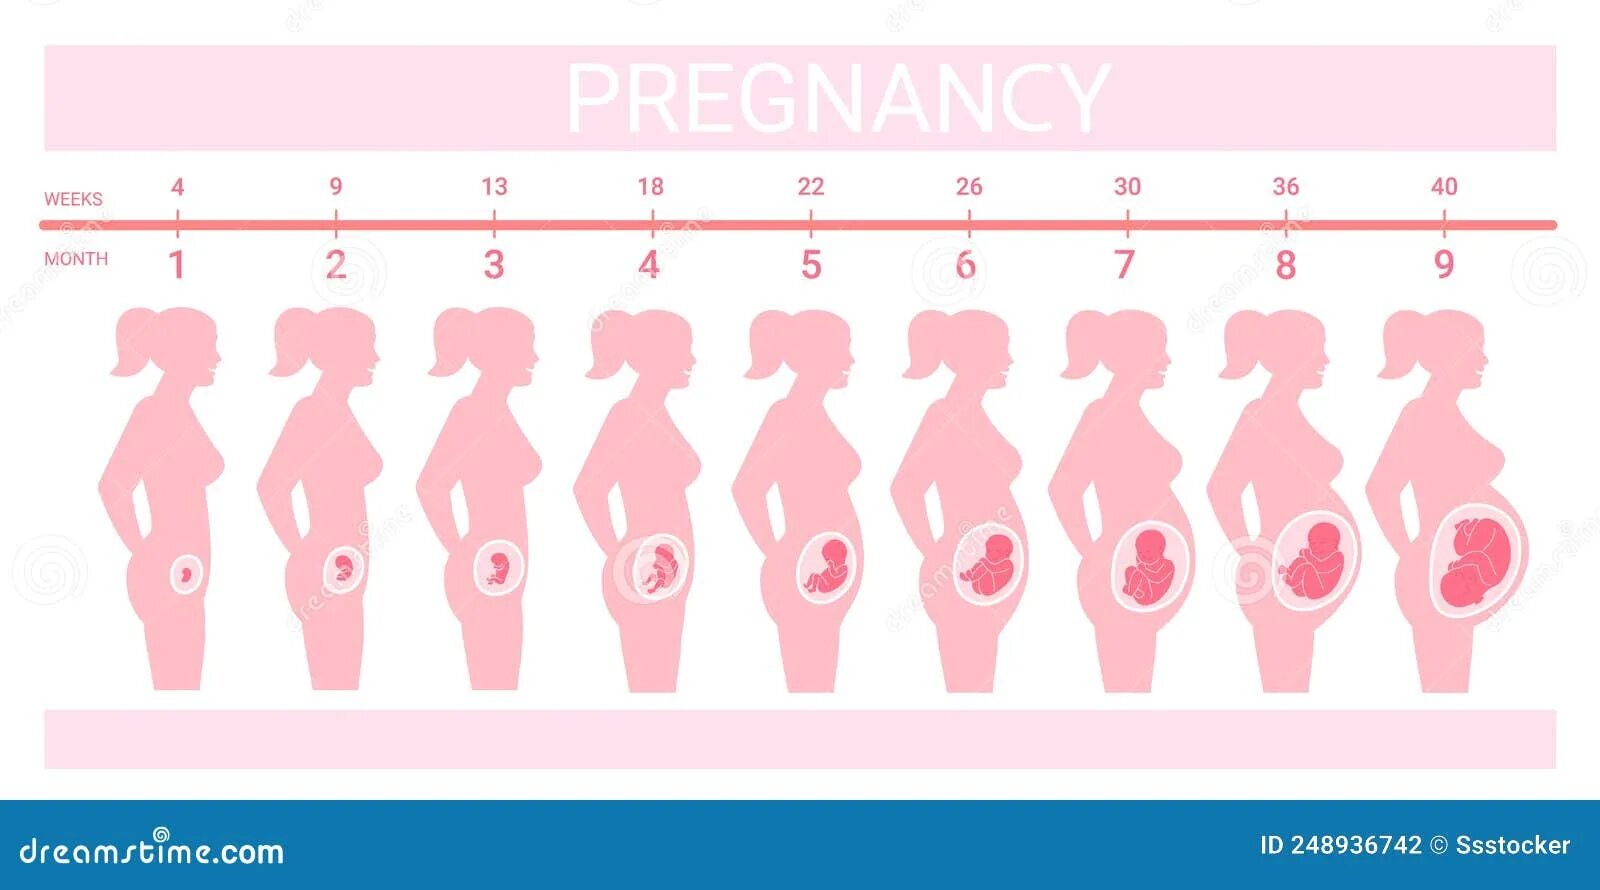 Триместры беременности как определить. Триместры по месяцам и неделям. Триместры и месяцы беременности. Триместры беременности по месяцам.